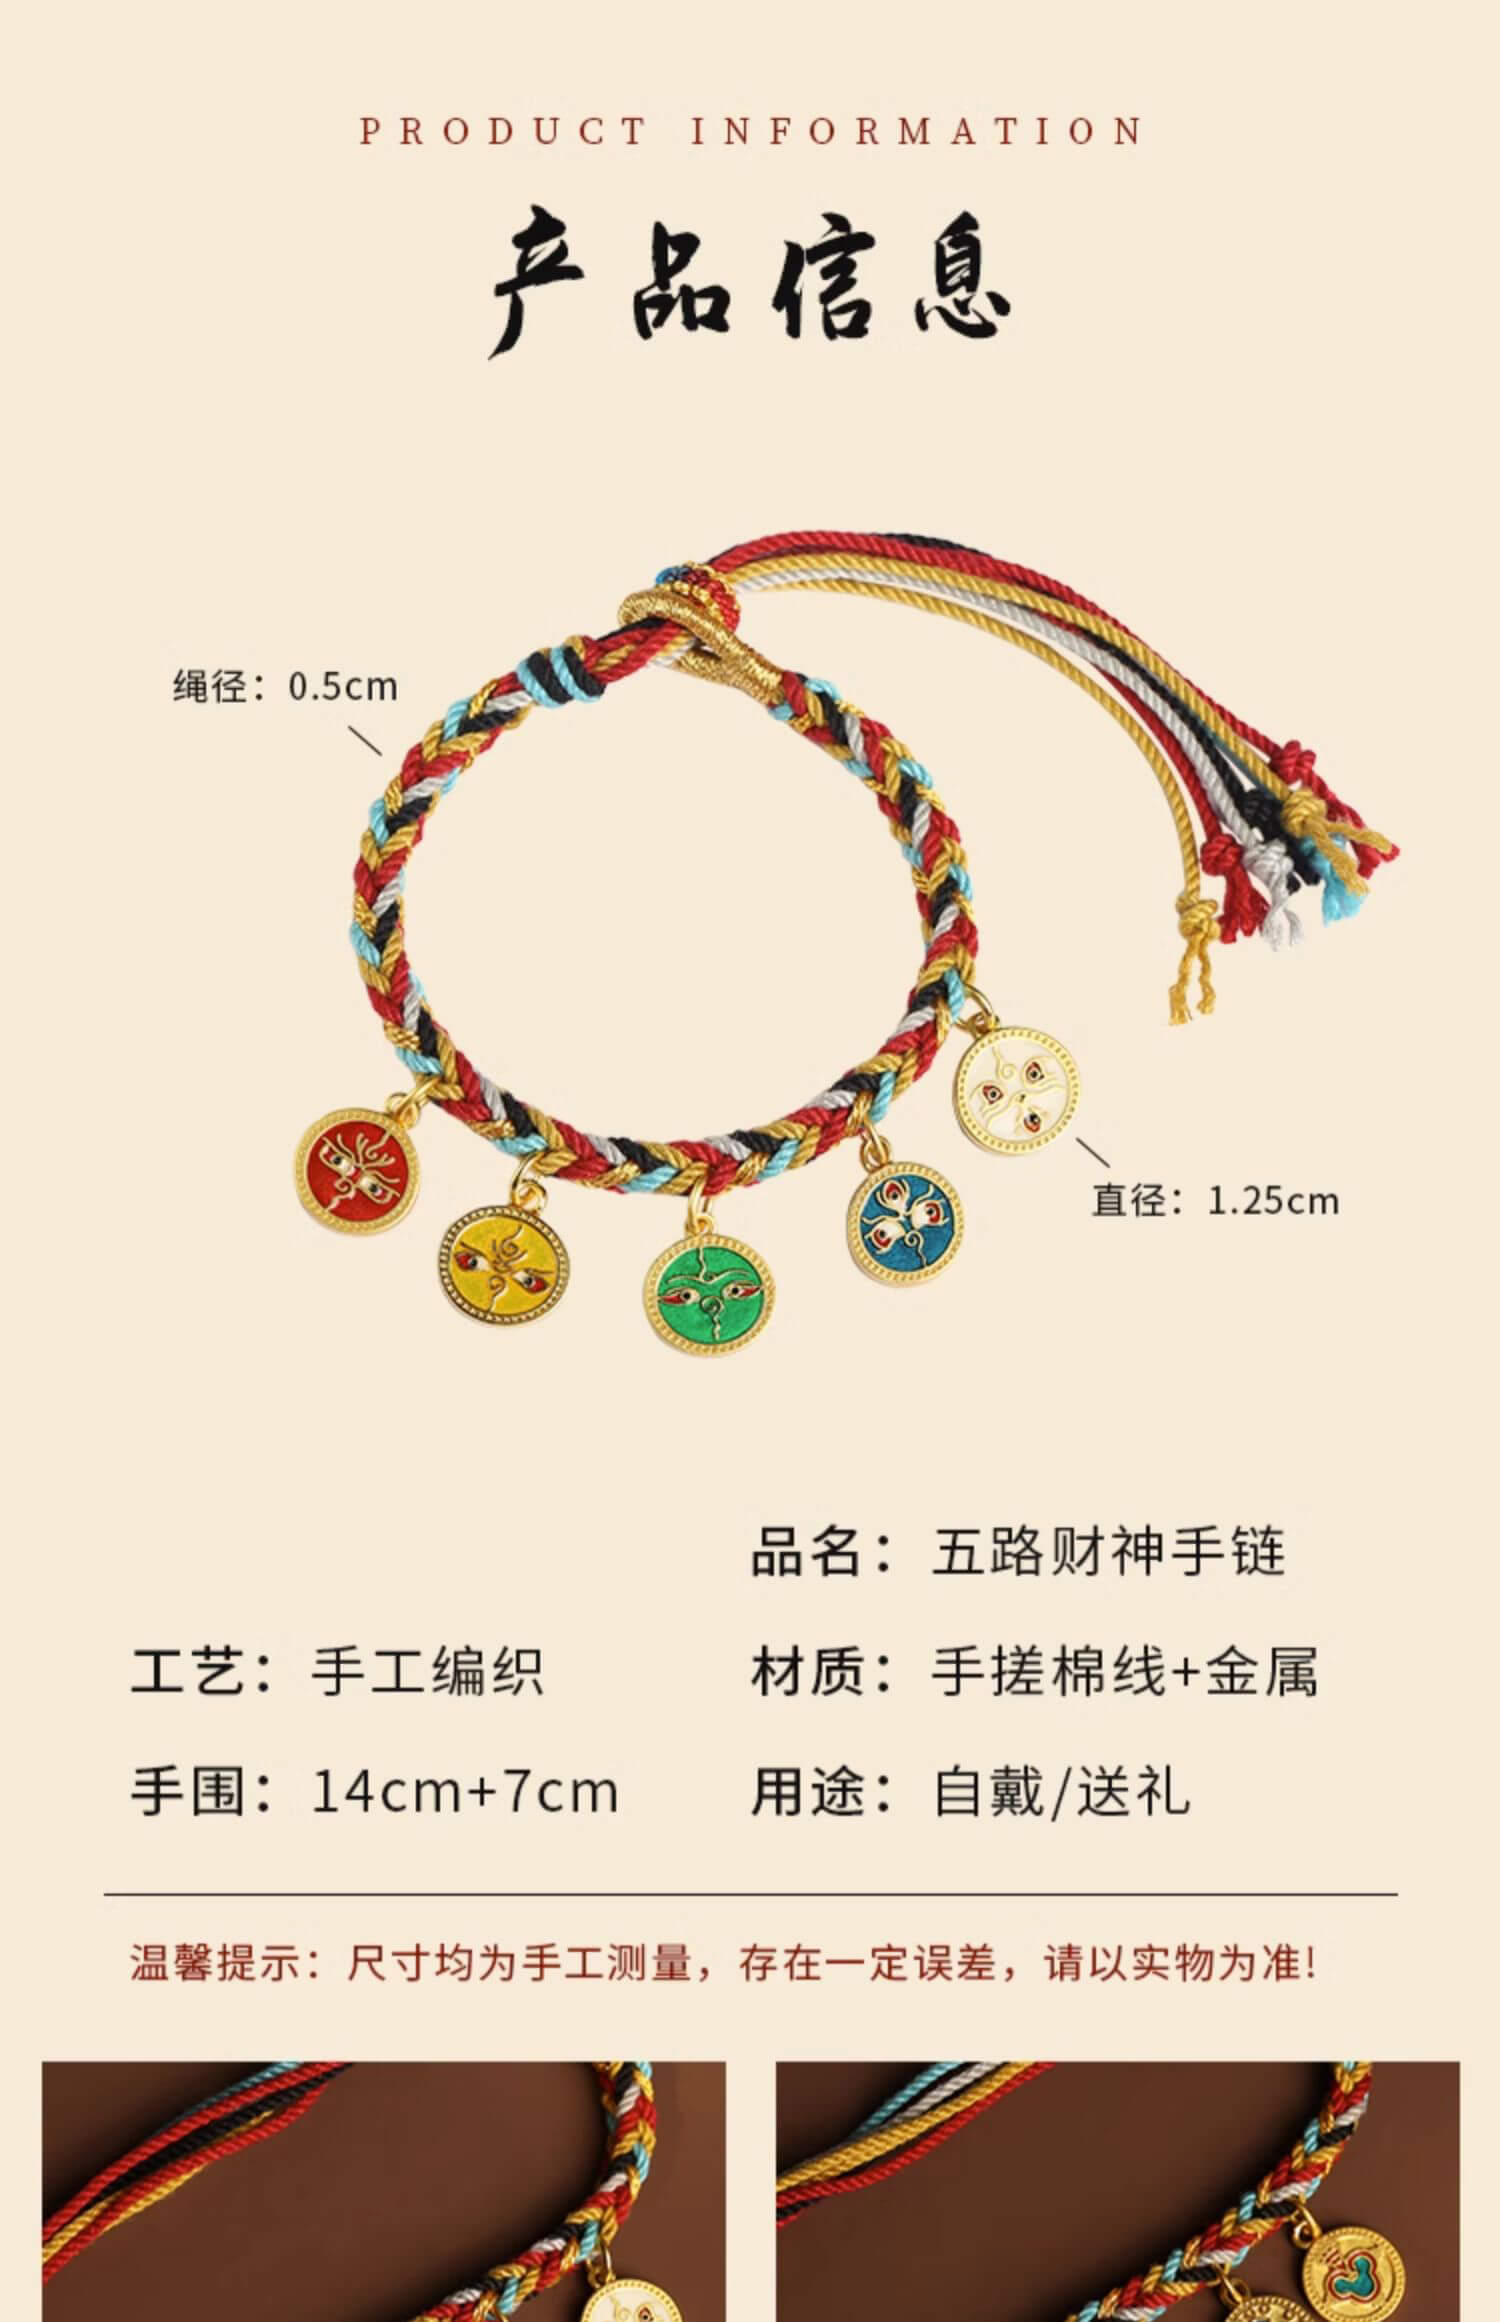 《五路財神》紮基拉姆藏式財運編織手繩